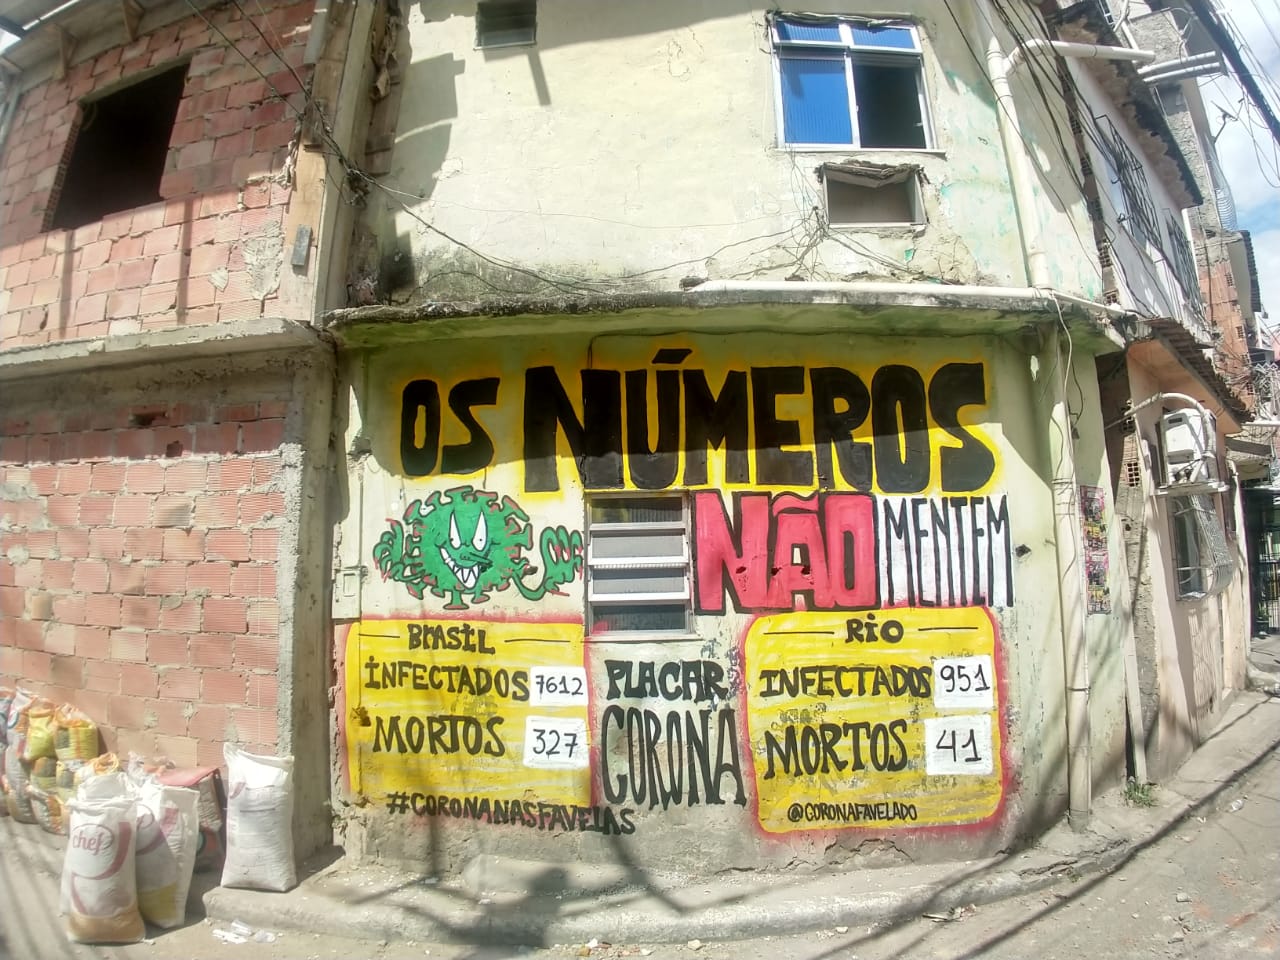 Brasilien 2020 – 1: “Die Pandemie hat die Favela erreicht” (Interview)